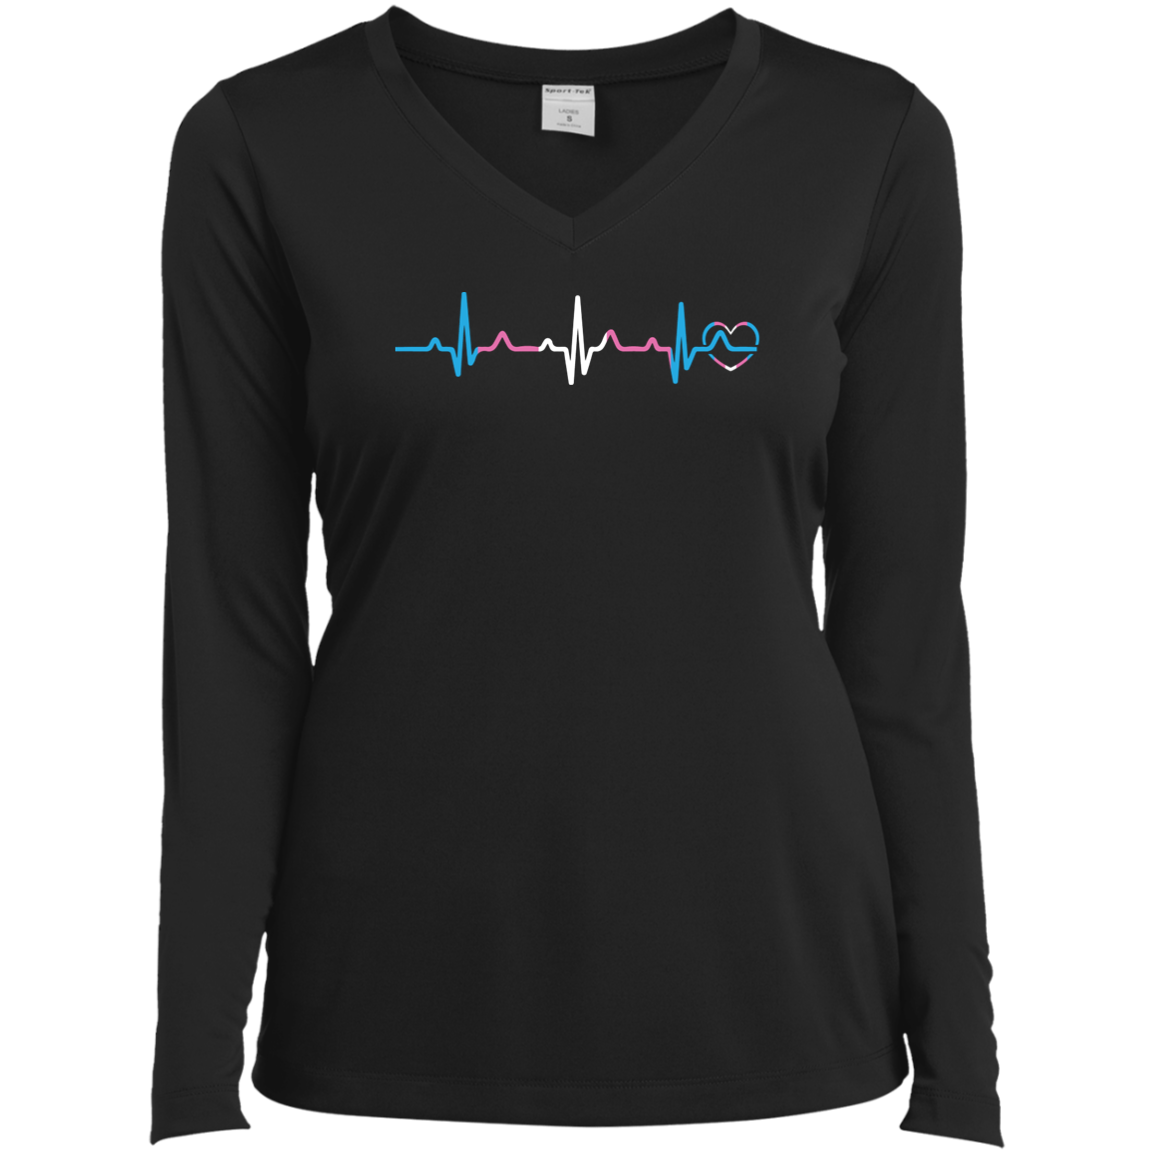 Trans Pride Heartbeat full sleeves v-neck black tshirt for women